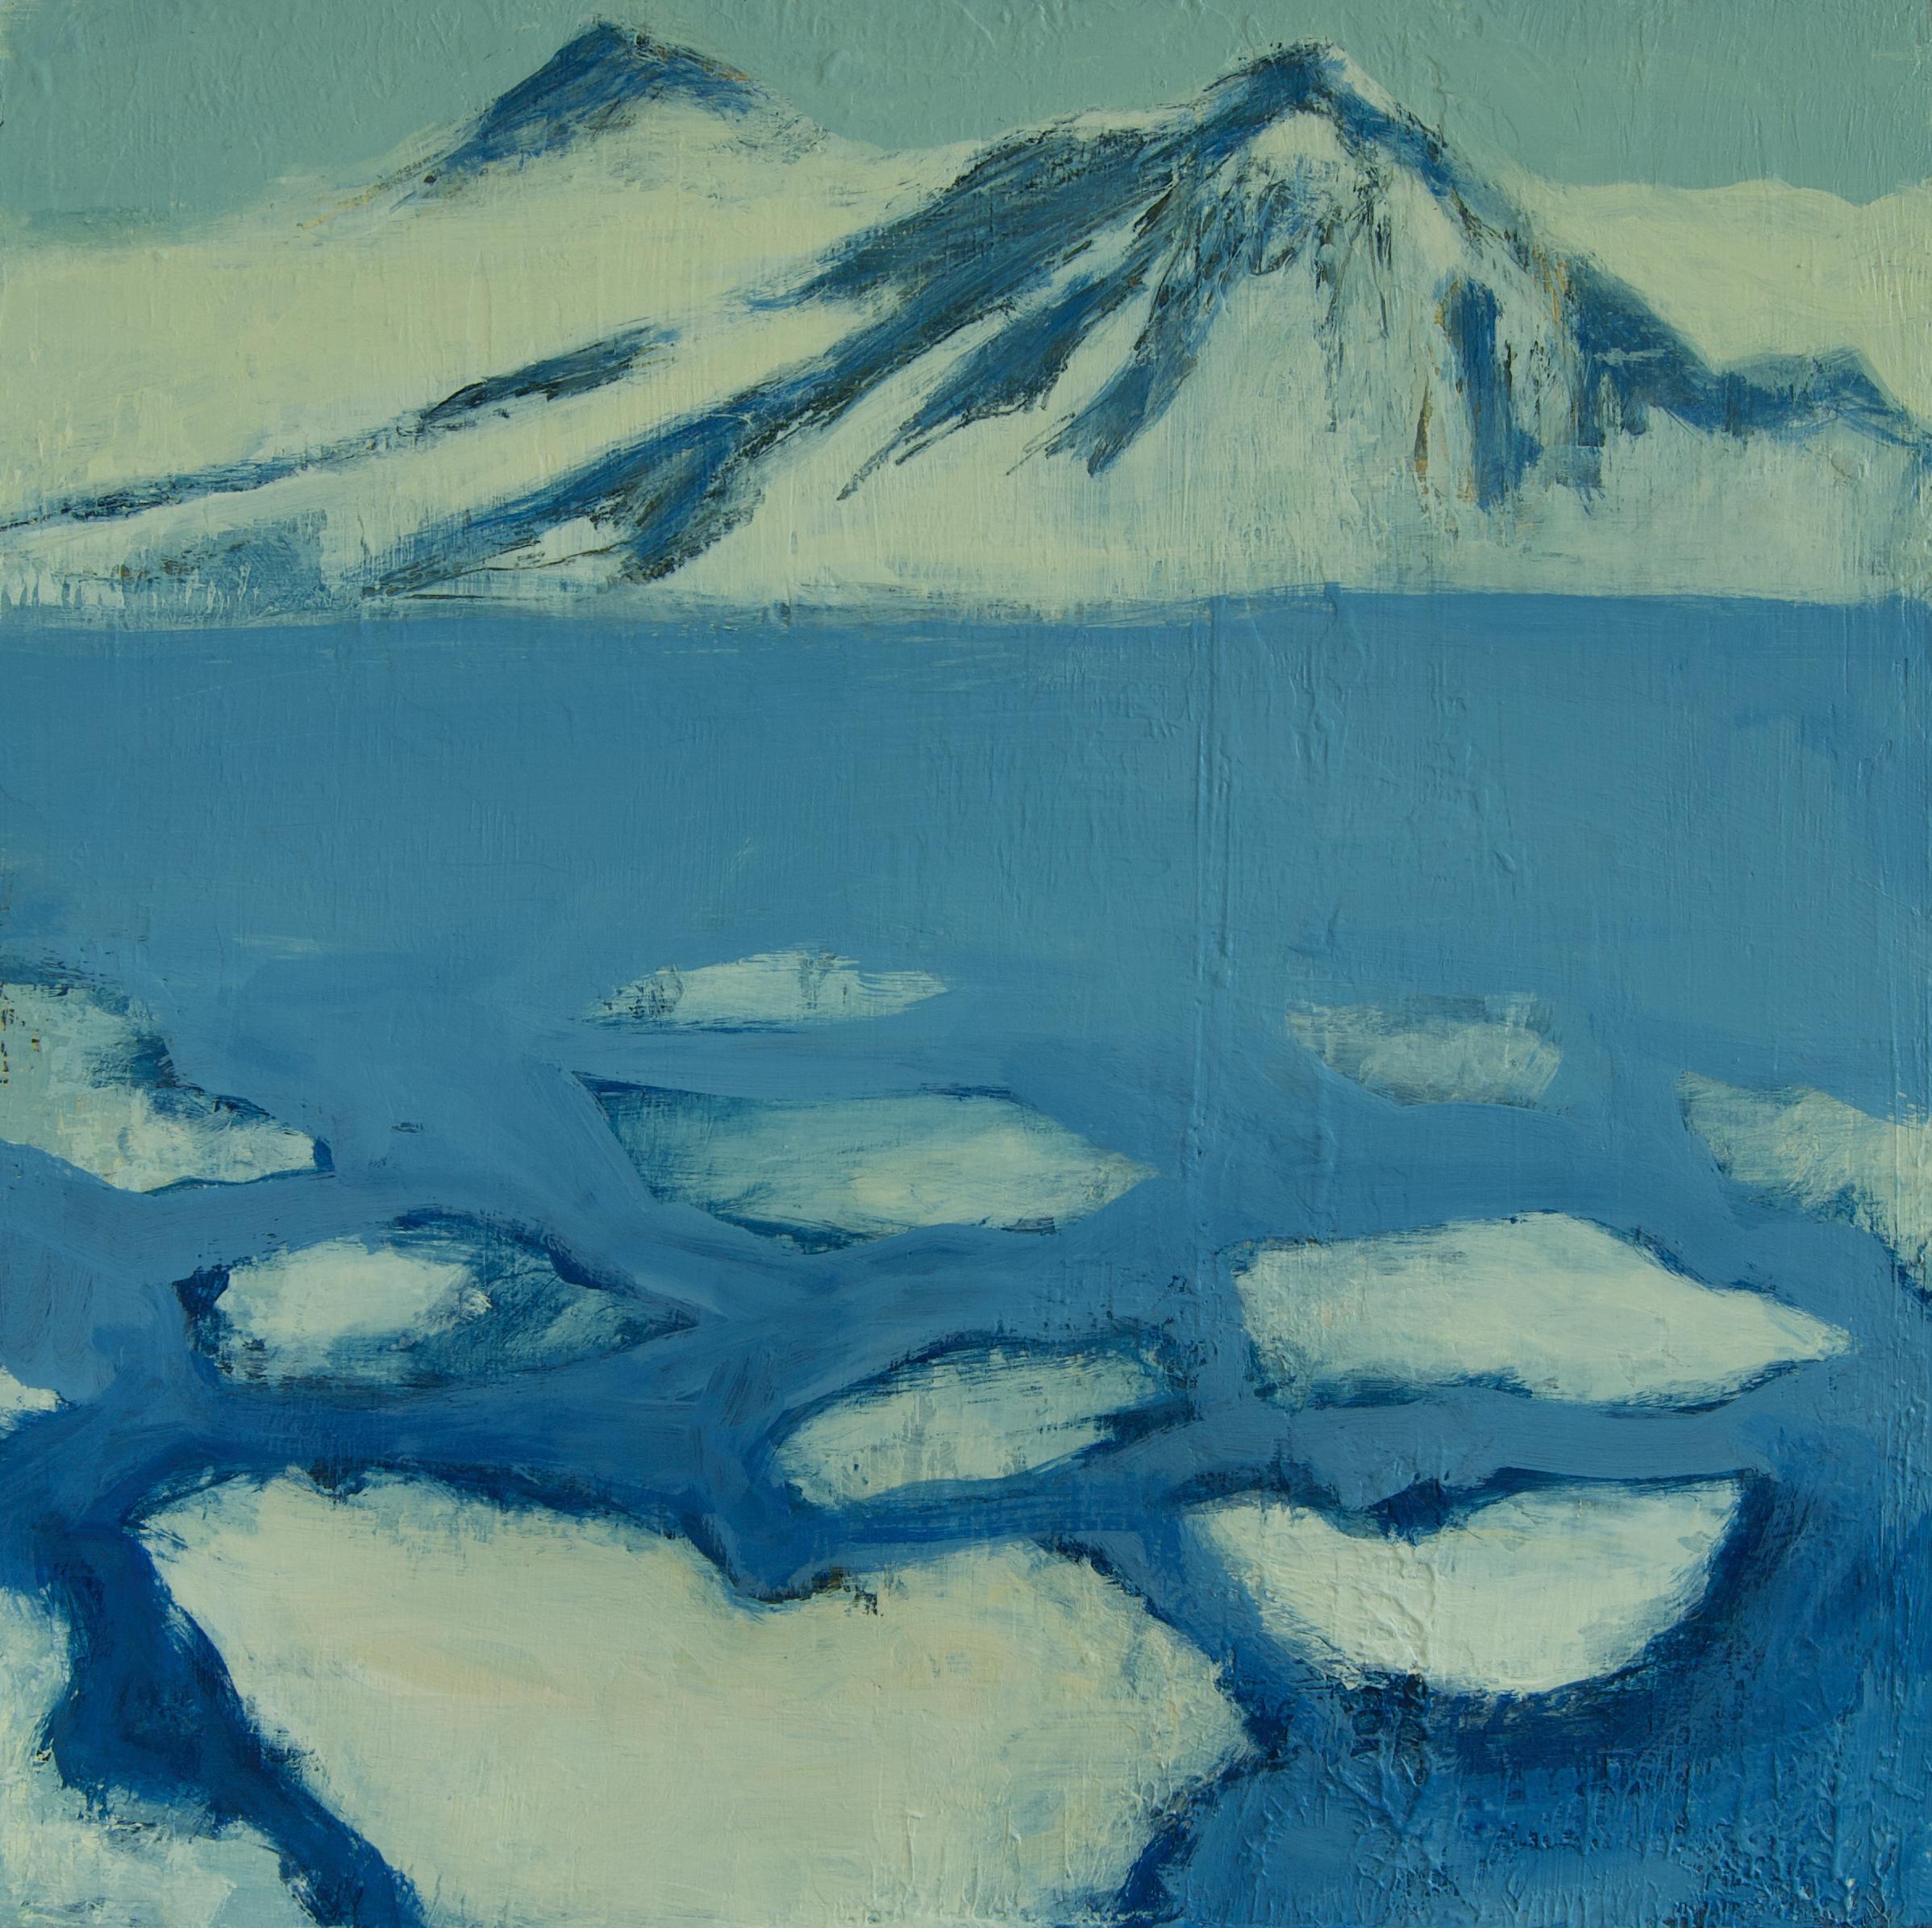 Landscape Painting Pia De Girolamo - Peinture acrylique Arctique « Ice and Mountains » de Svalbard Archipelago, 2020